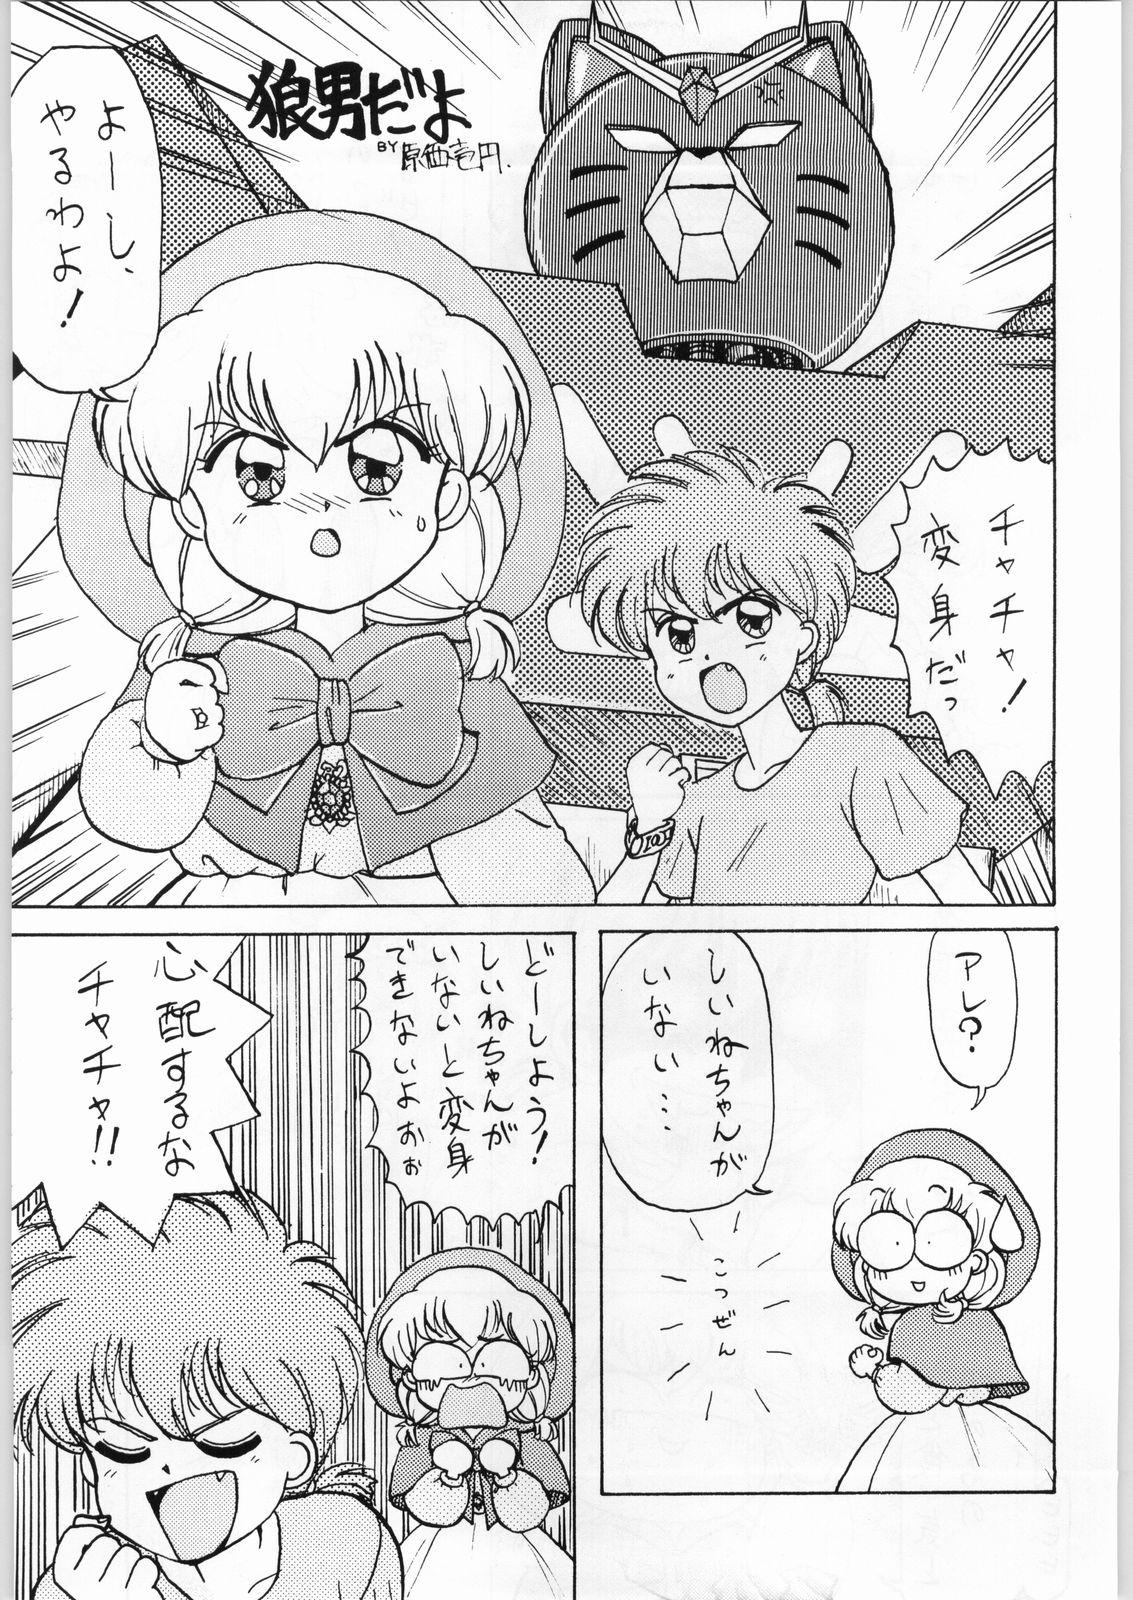 Butt Plug Dance of Princess 3 - Sailor moon Tenchi muyo Akazukin cha cha Minky momo Ng knight lamune and 40 Ride - Page 6